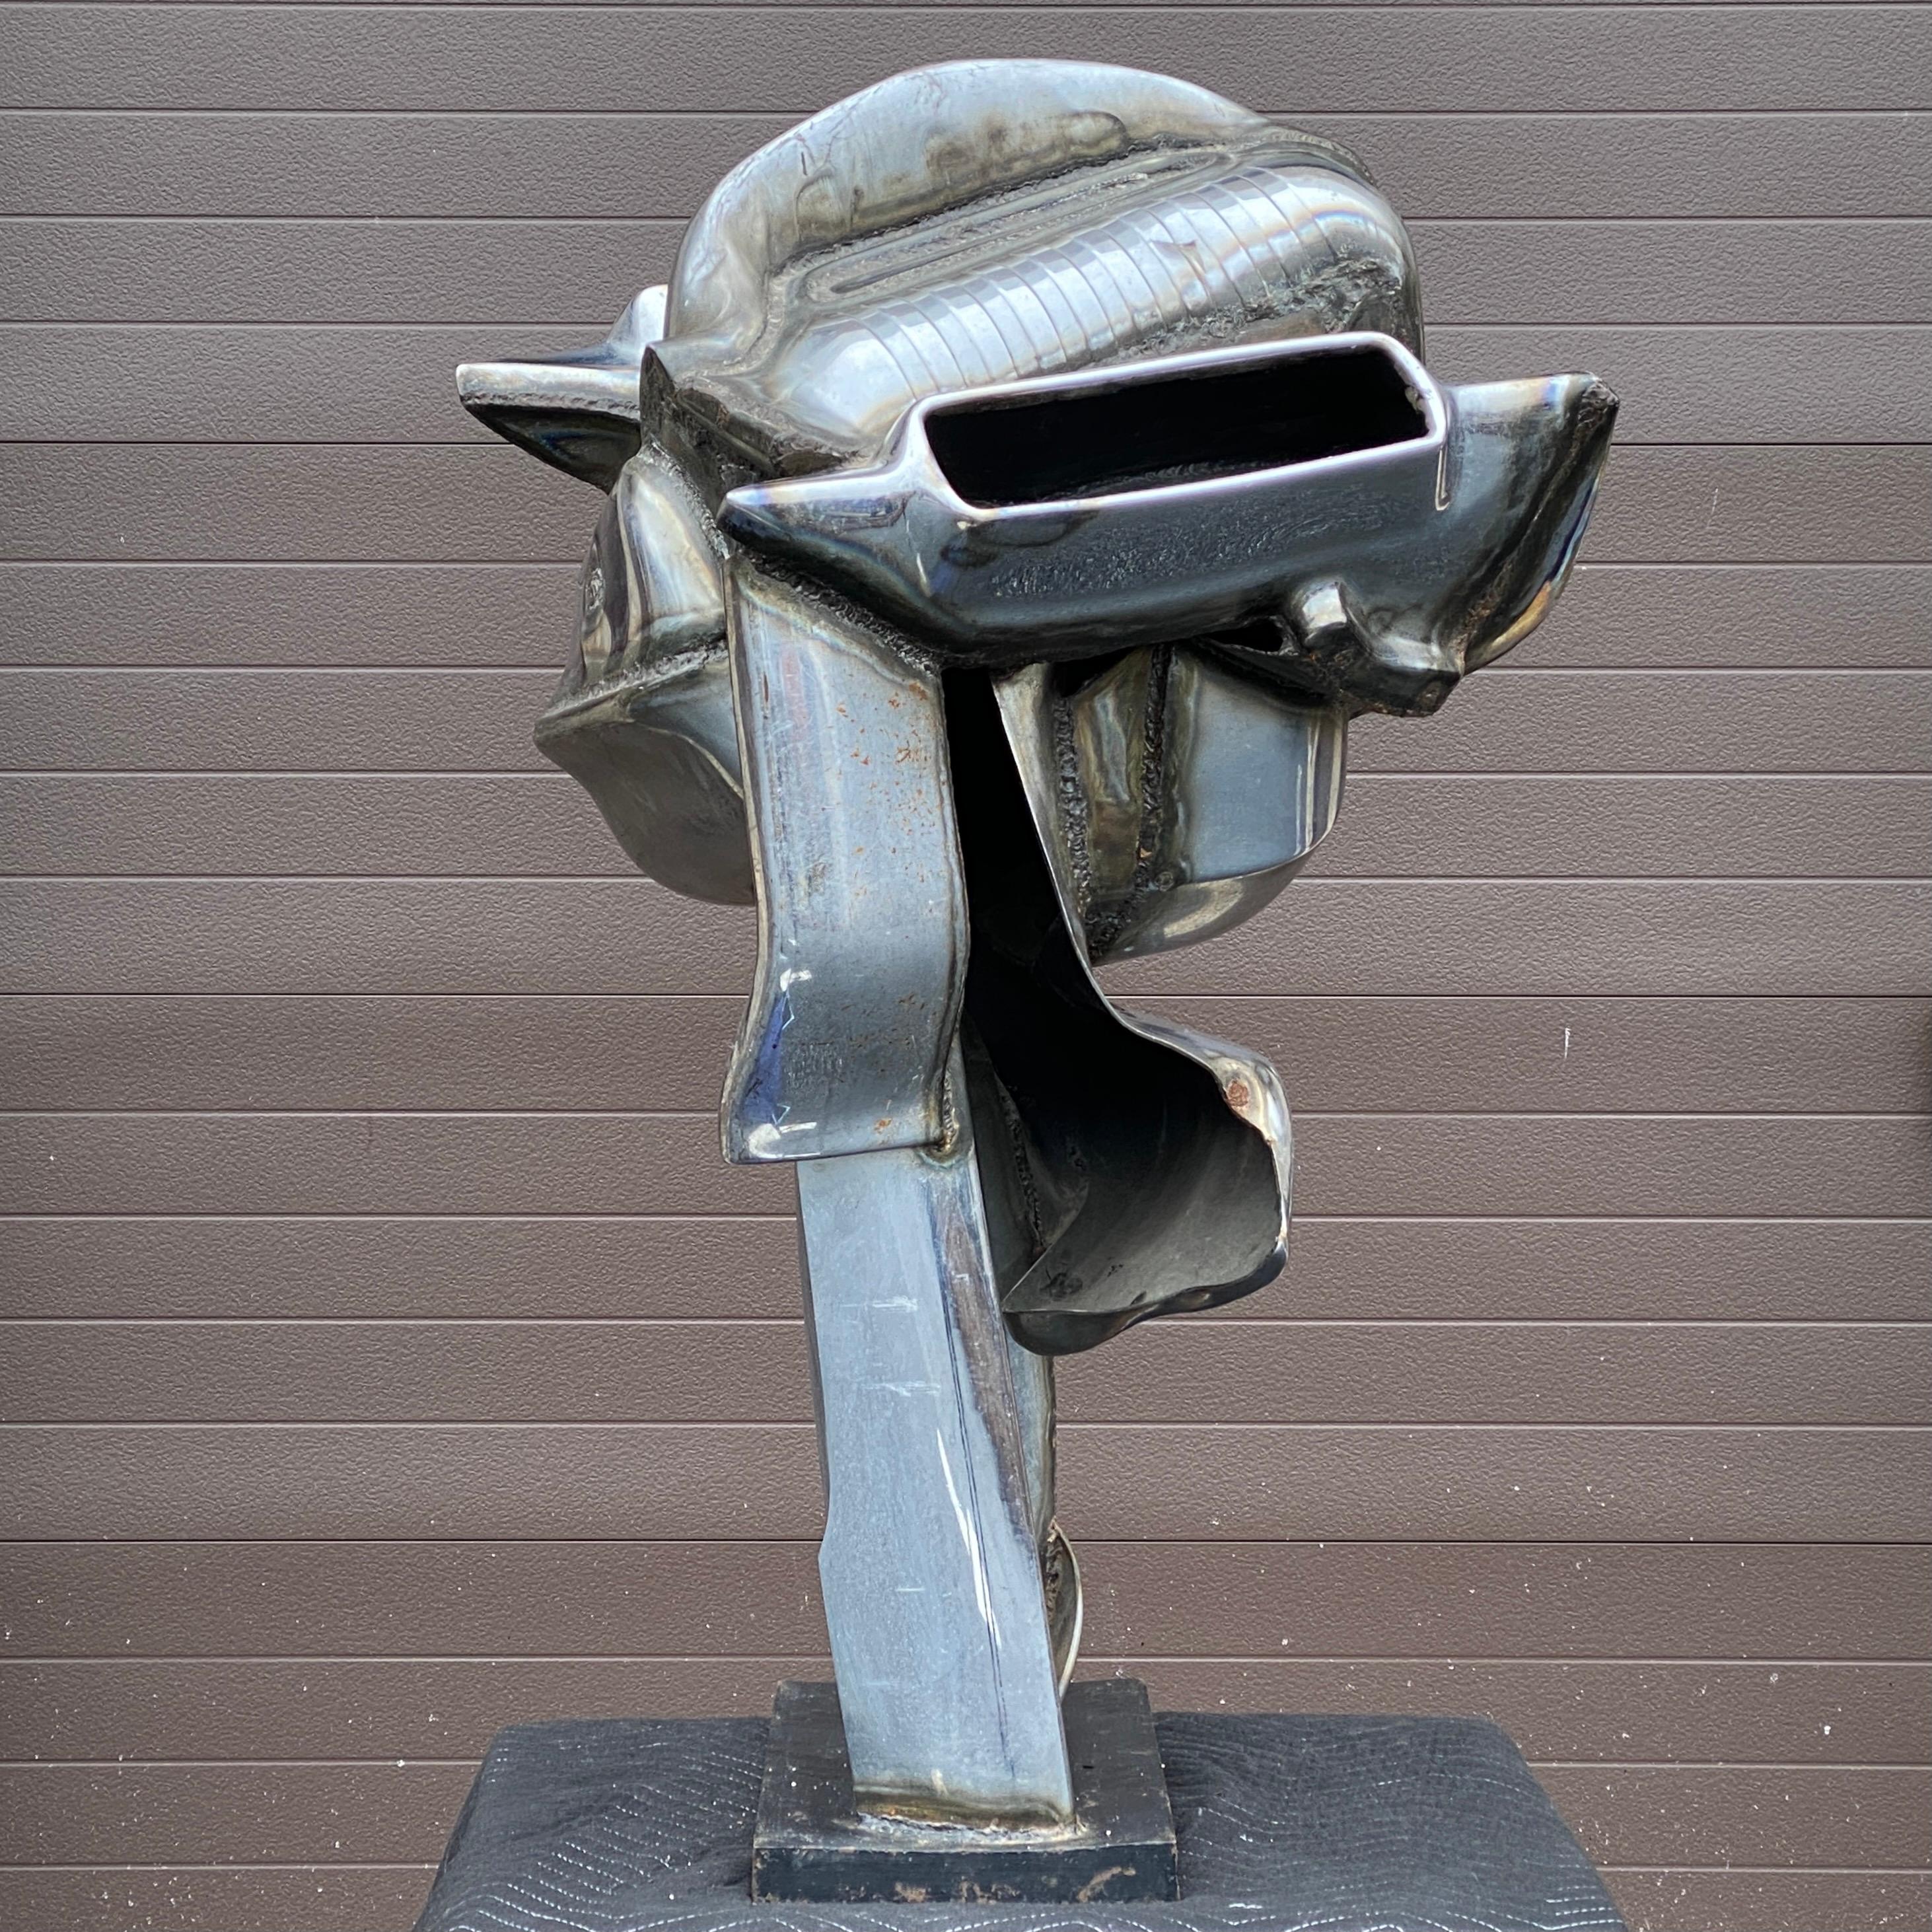 Sculpture à grande échelle en acier chromé soudé, composée de pièces de voitures récupérées, réalisée par l'artiste Jason Steele (1919-1983). Signé par l'artiste.
La base rectangulaire mesure environ 18